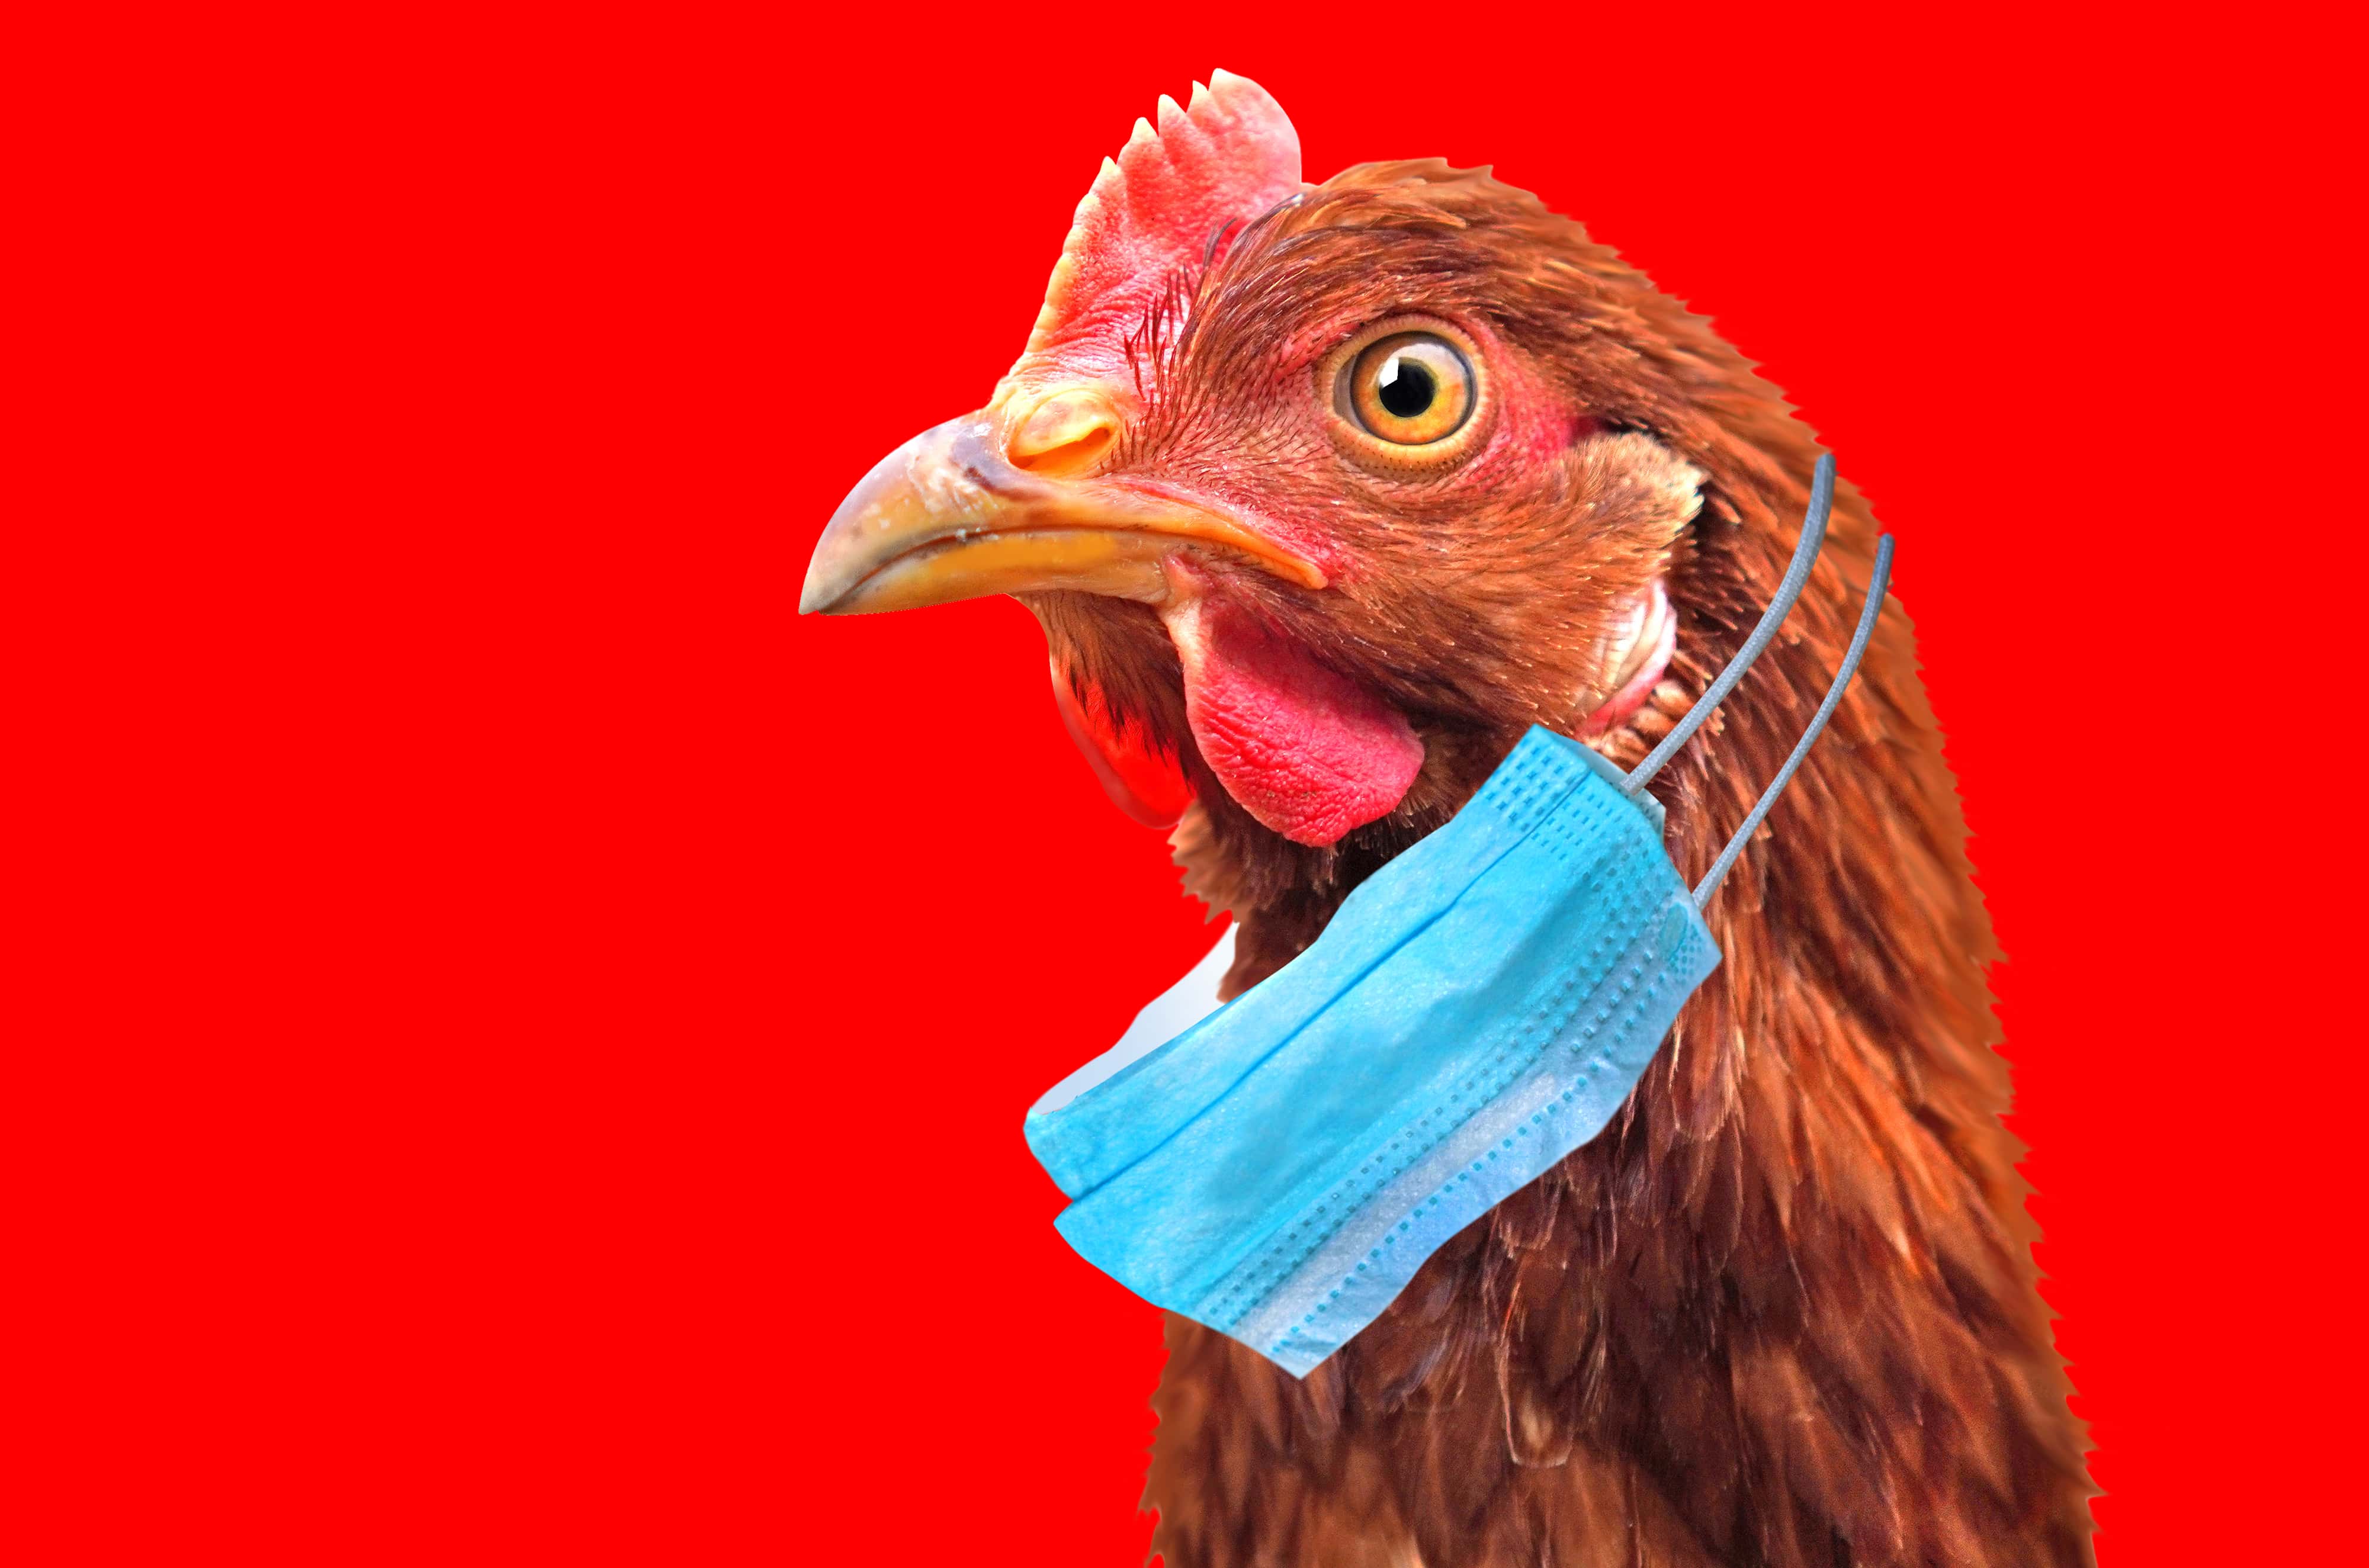 Grippe aviaire : vers un renforcement de la surveillance humaine pour détecter précocement toute transmission à l’être humain